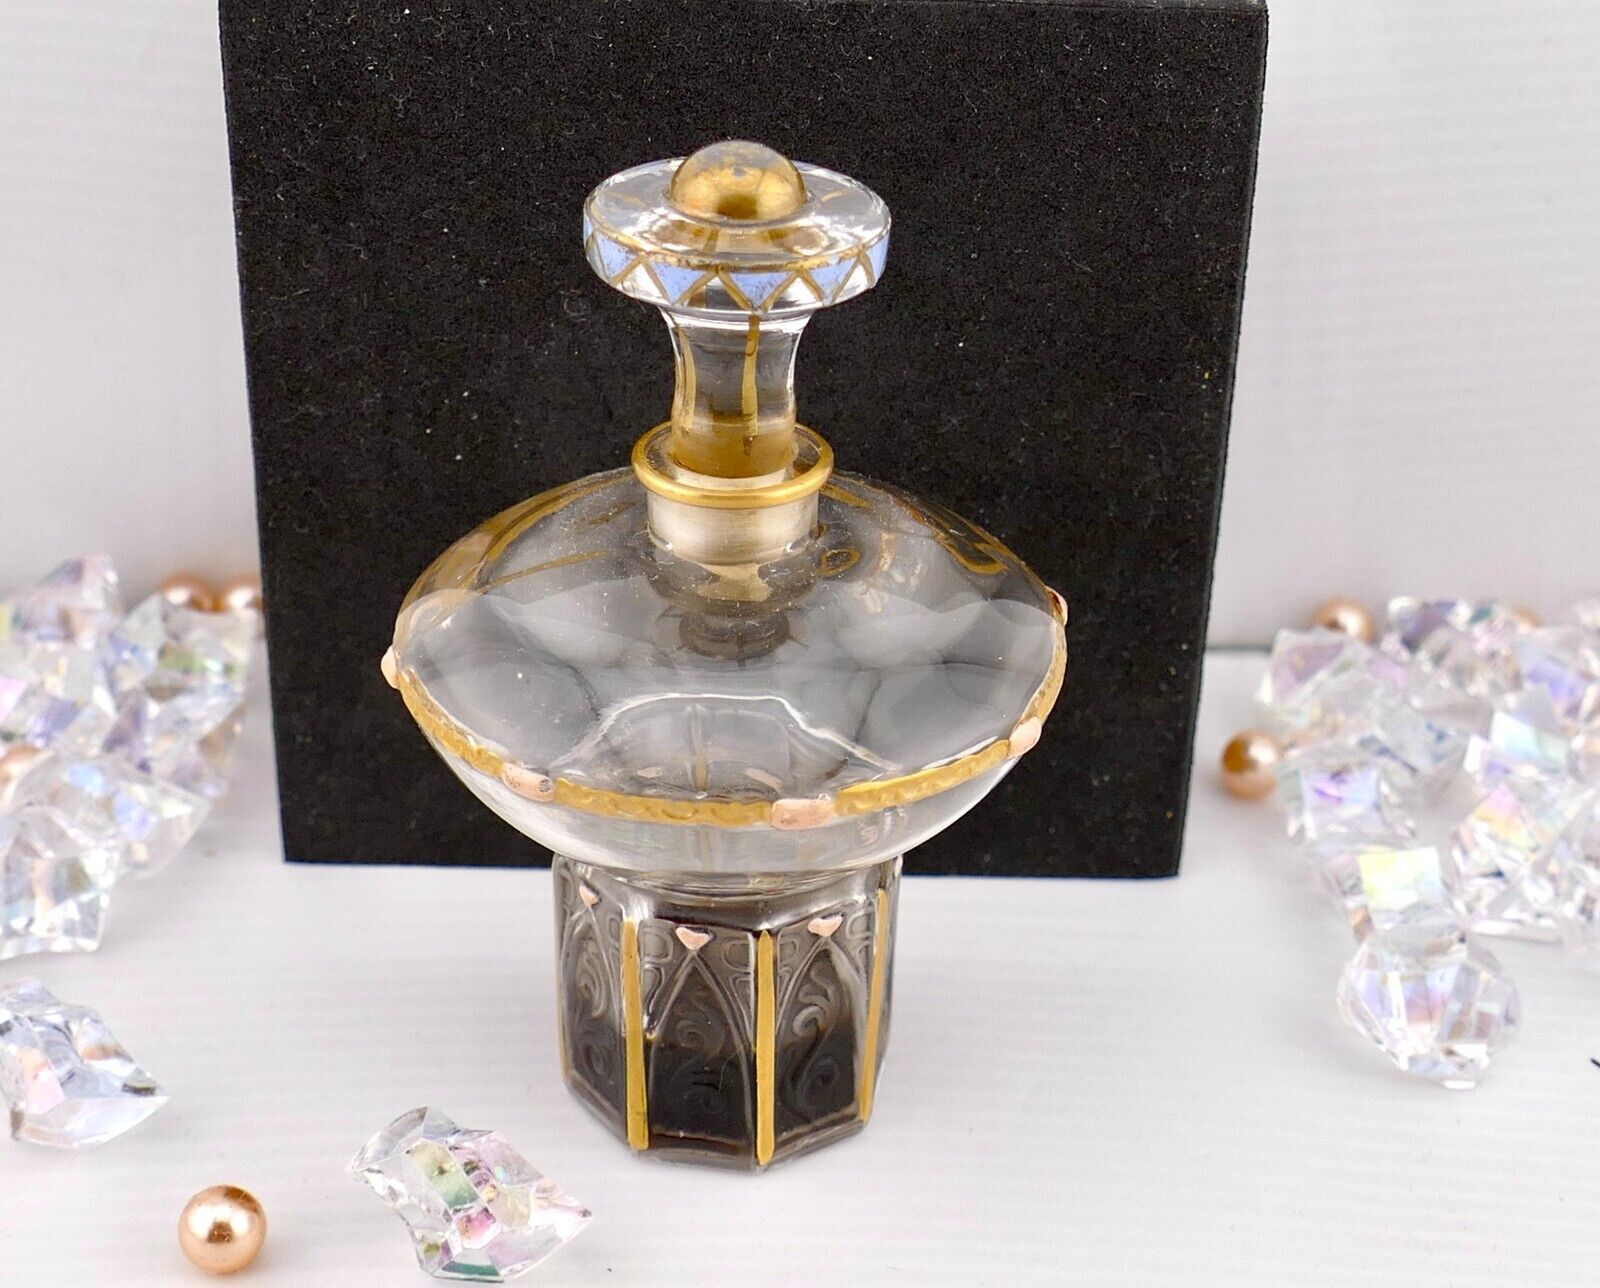 1922 Julian Viard Langlois Shari Perfume Bottle/Stopper Some Perfume Left, Rare